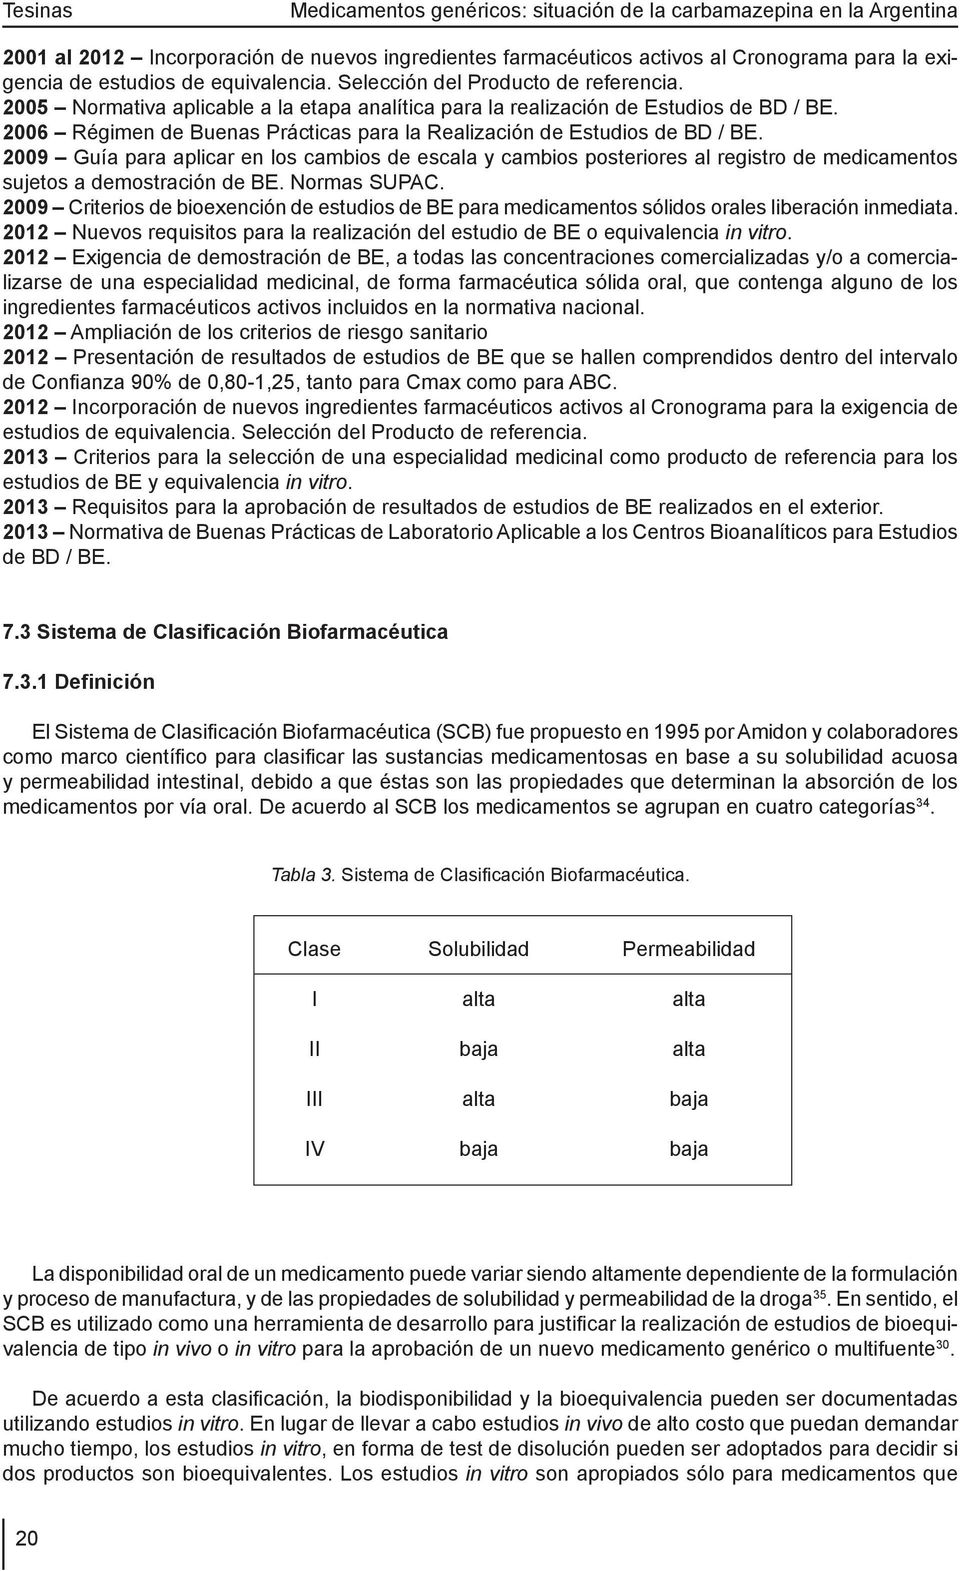 2009 Guía para aplicar en los cambios de escala y cambios posteriores al registro de medicamentos sujetos a demostración de BE. Normas SUPAC.